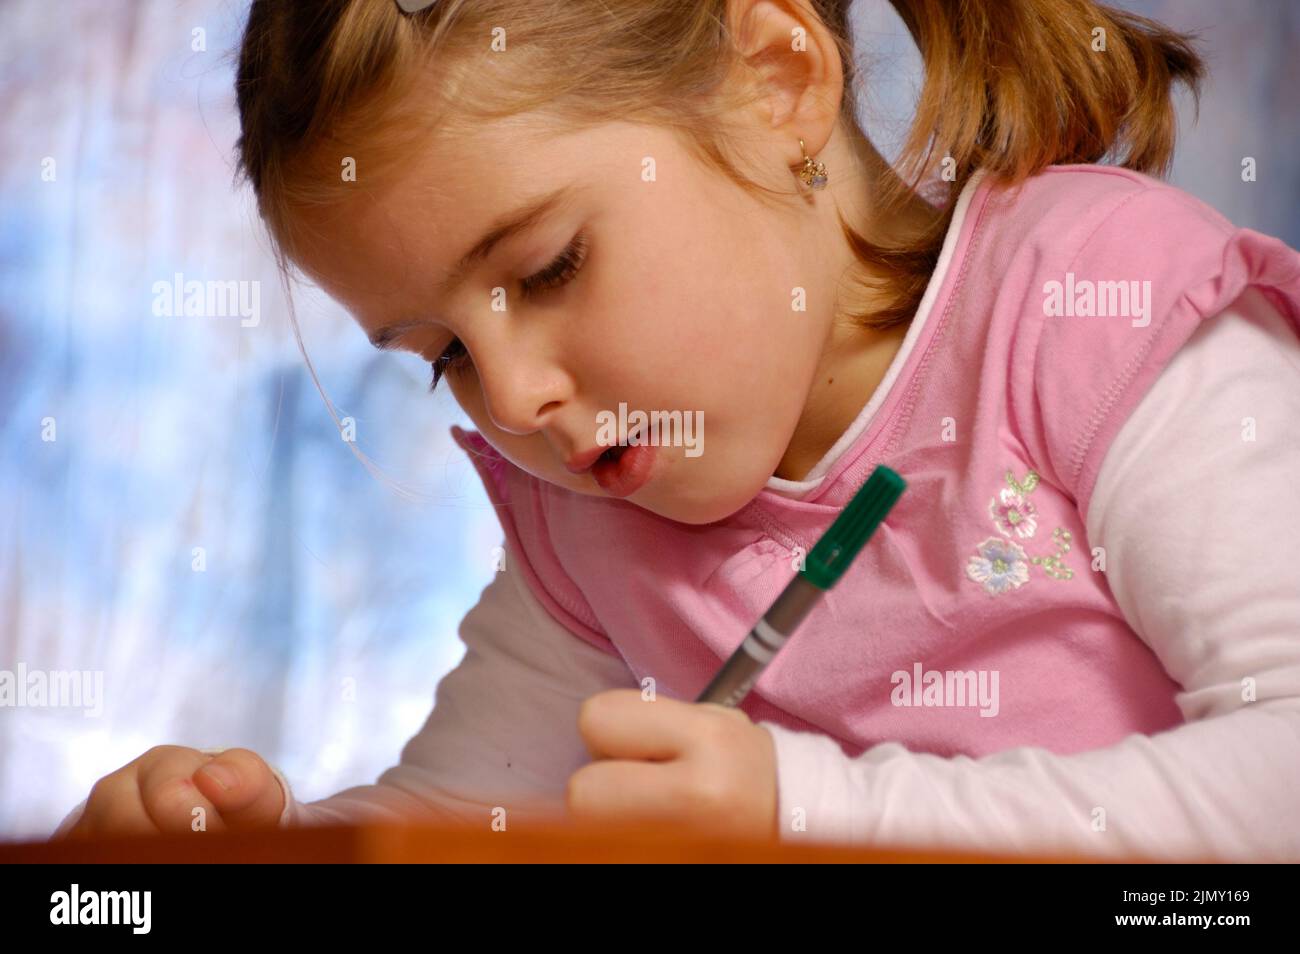 Kleines Mädchen schreibt auf einem Notizbuch, zurück zur Schule Konzept Stockfoto